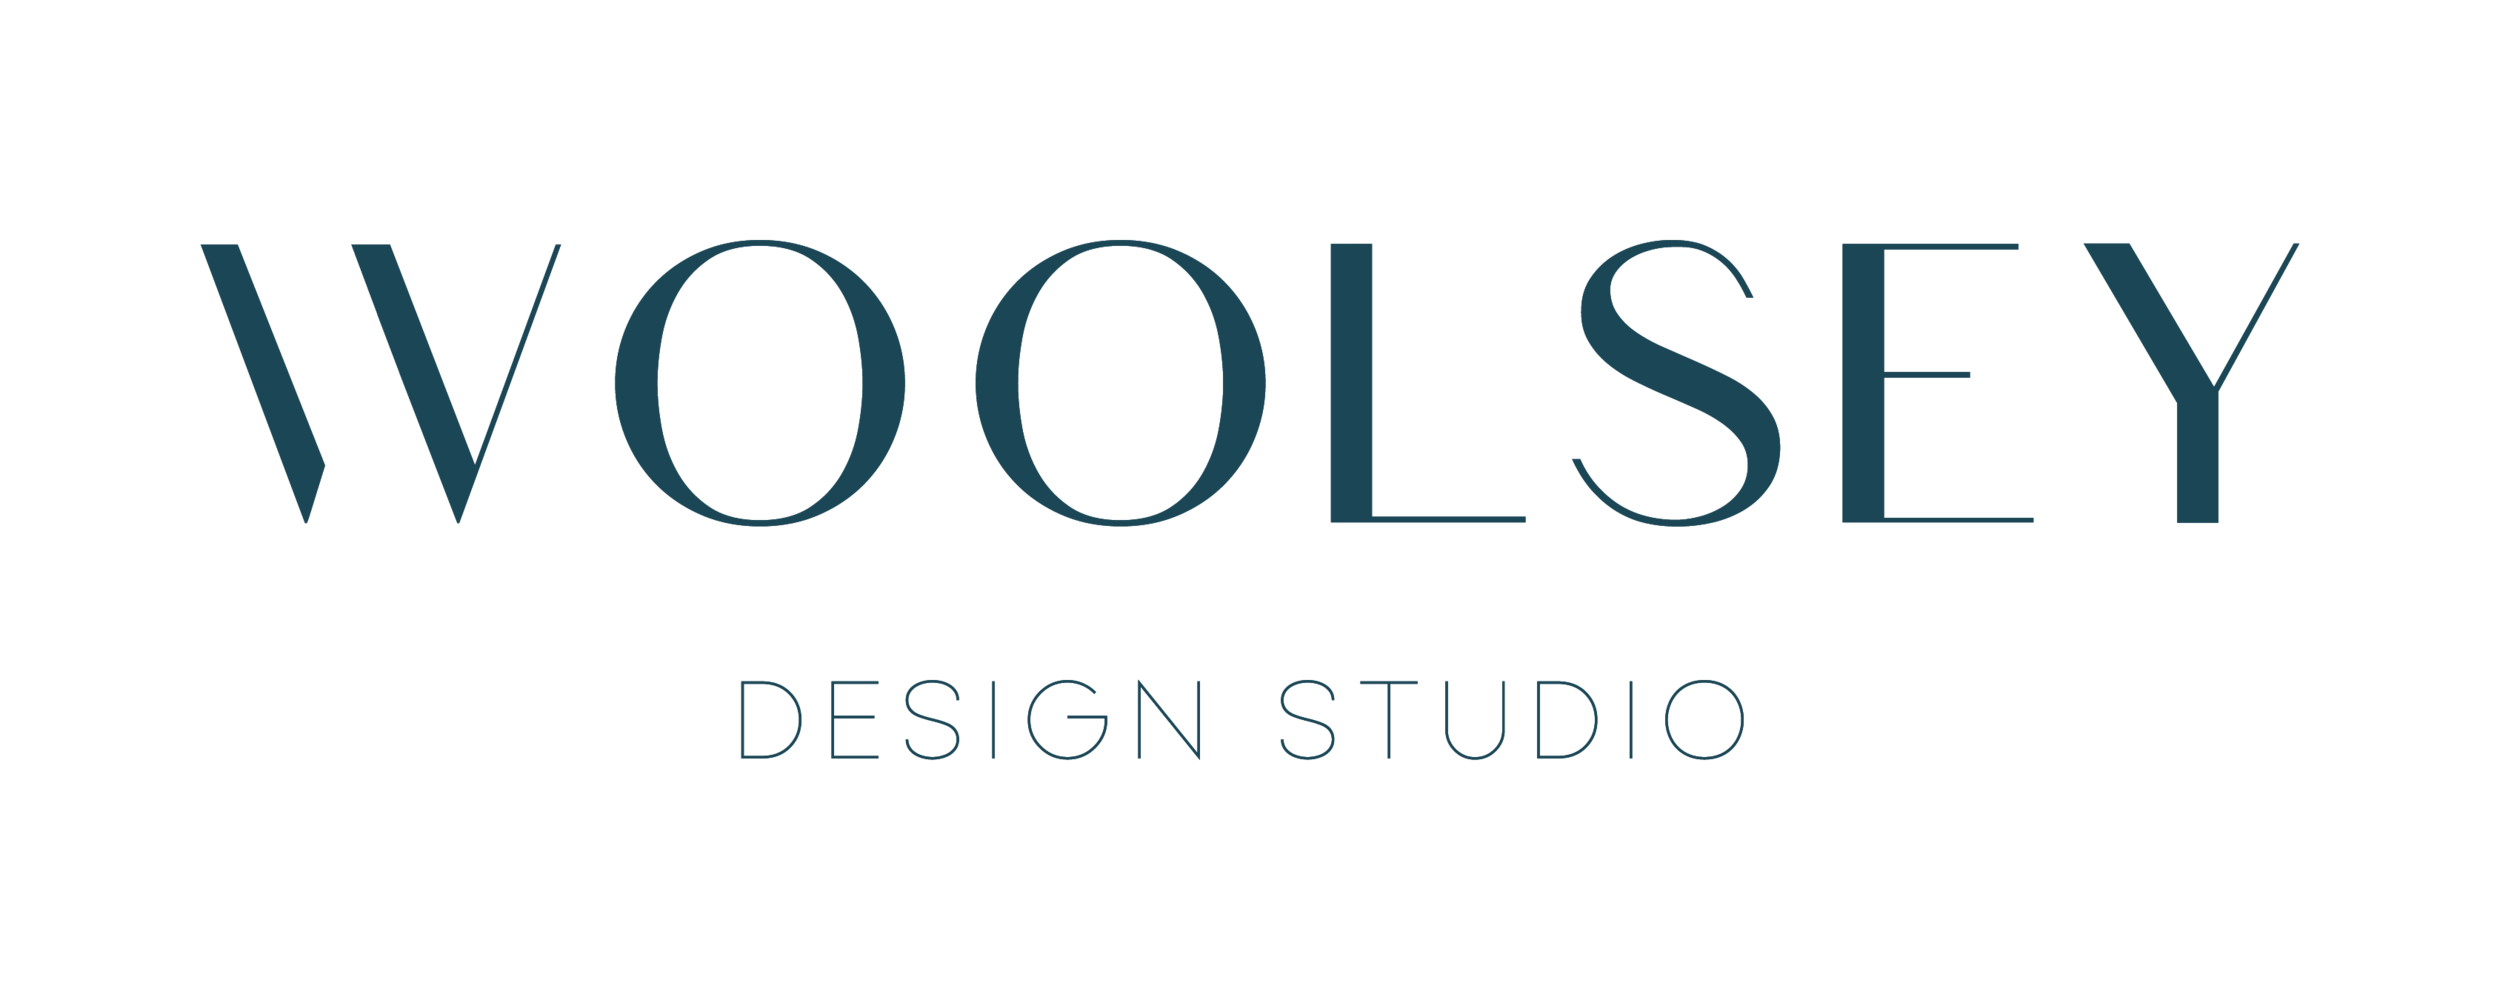 WOOLSEY DESIGN STUDIO